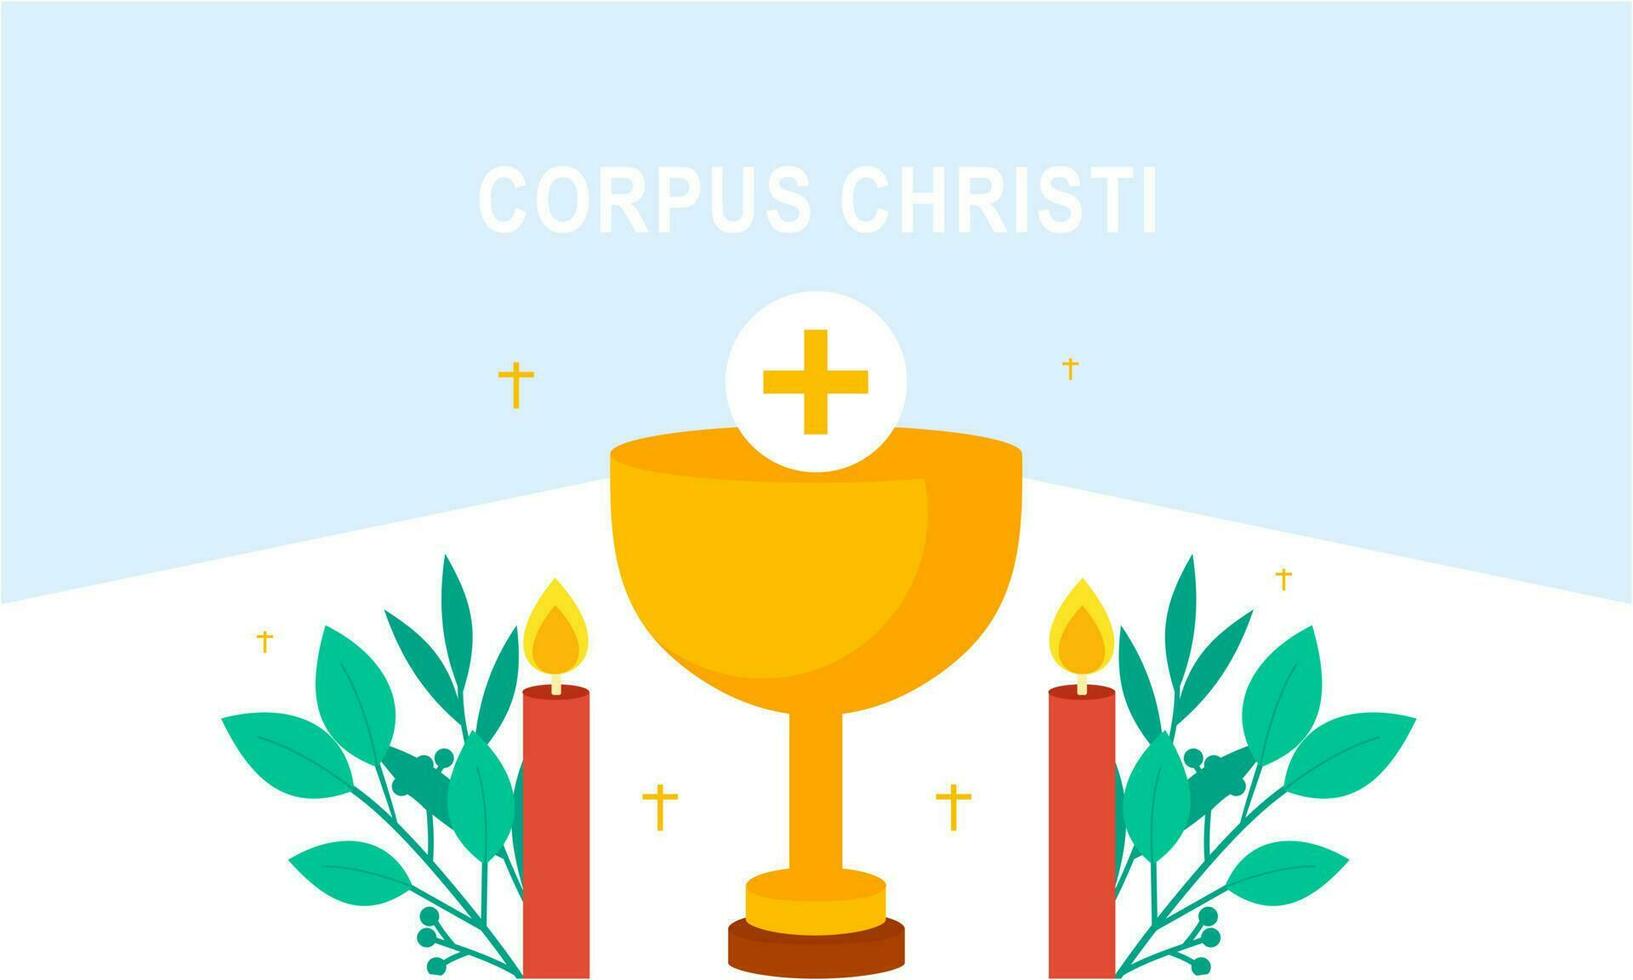 Korpus christi katholisch religiös Urlaub Vektor